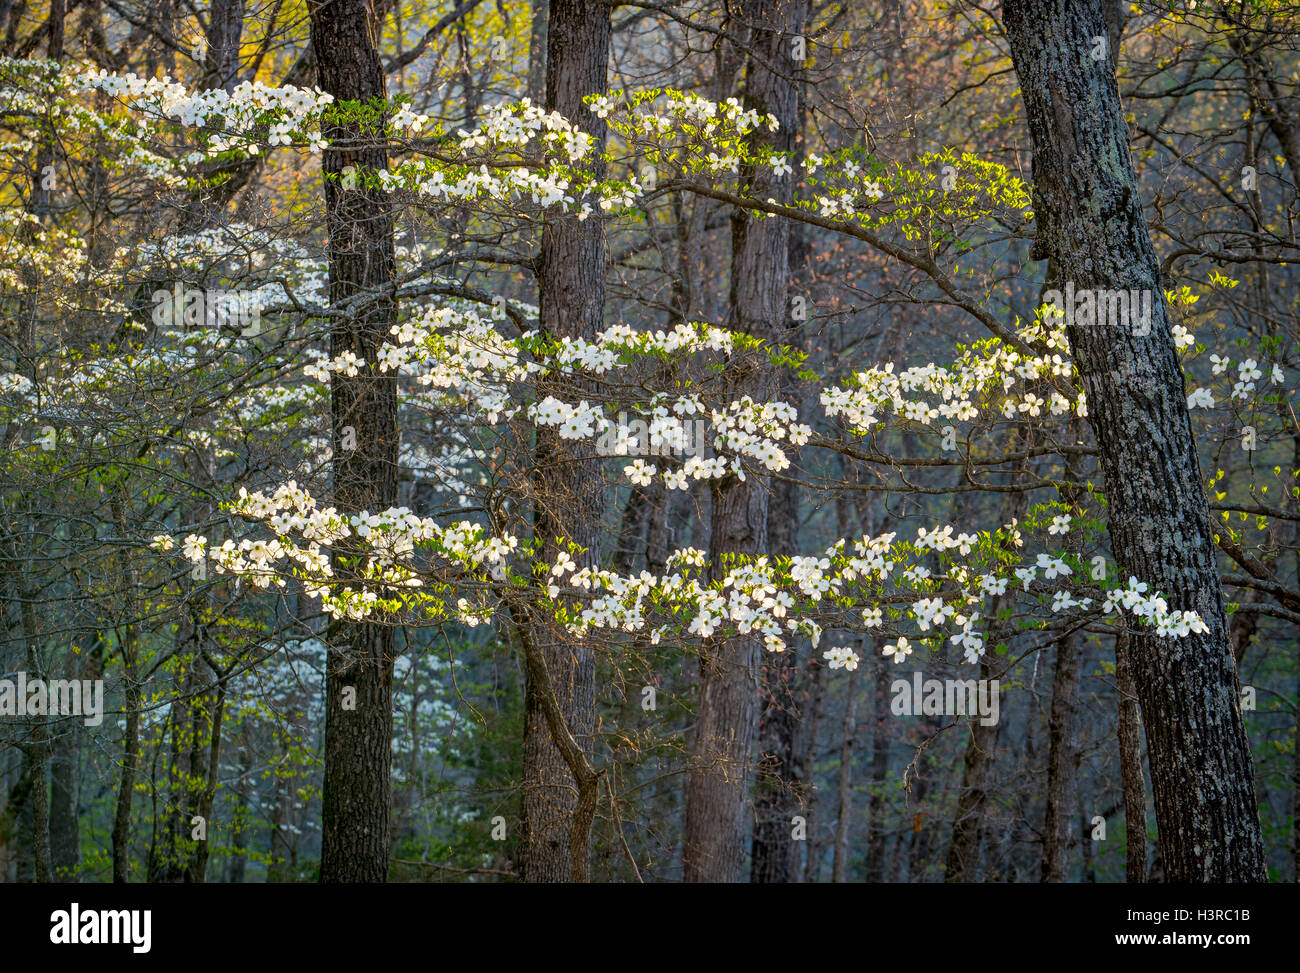 Des Teufels Den Staatspark, Arkansas: Morgensonne auf blühenden Hartriegels (Cornus Florida) im zeitigen Frühjahr Hartholz Wald des O Stockfoto